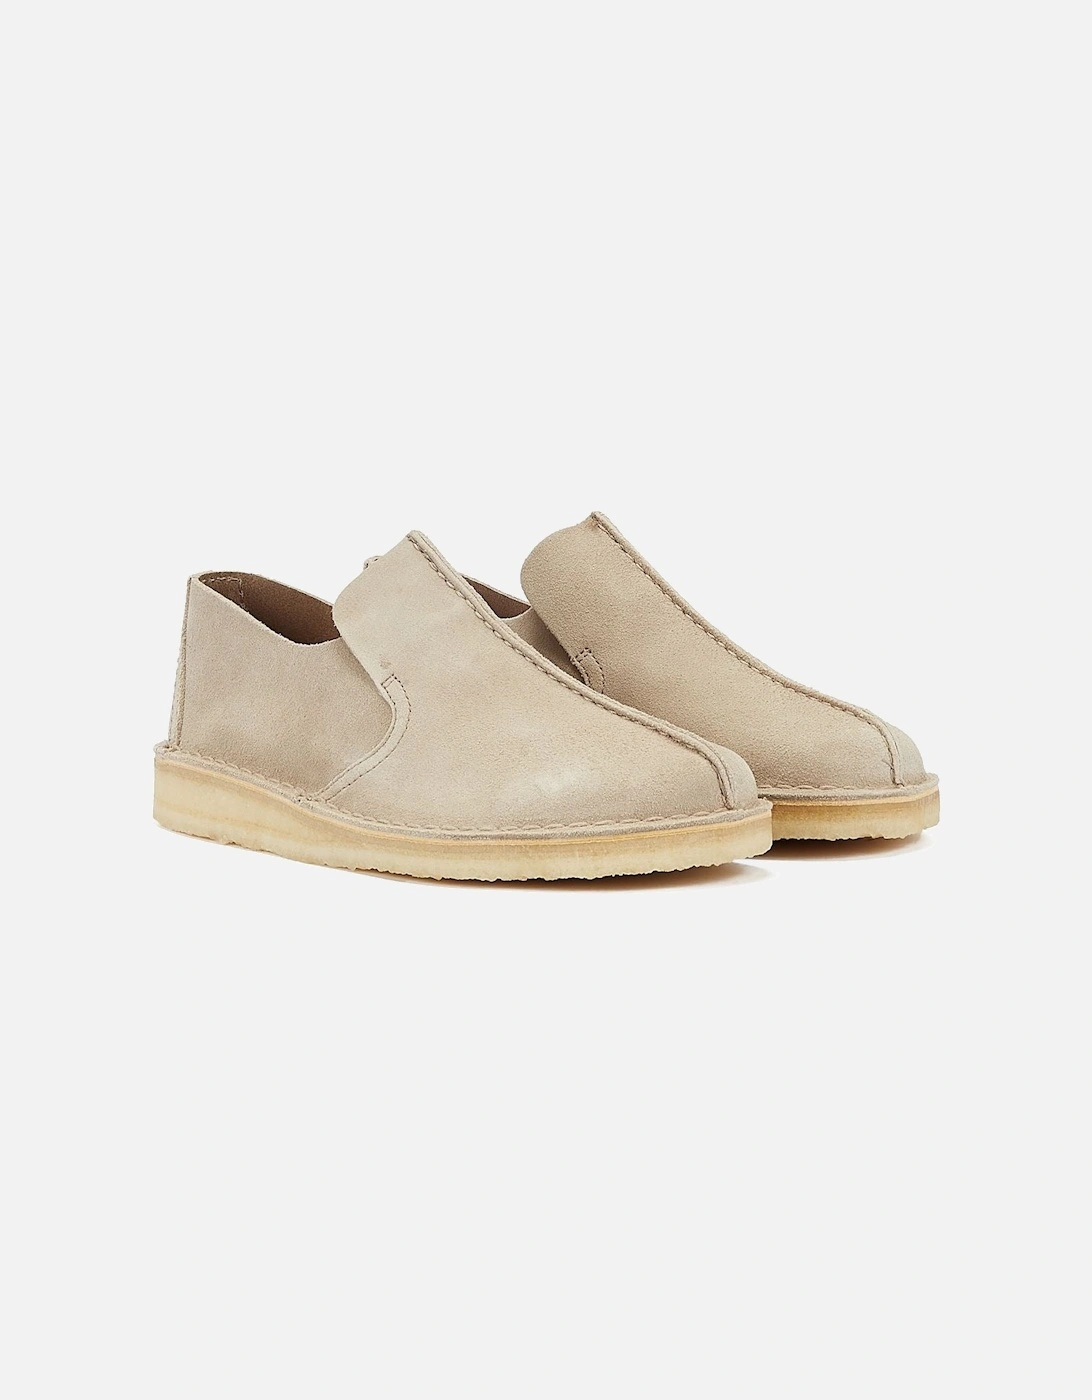 Originals Desert Mosier Men's Sand Suede Shoes, 9 of 8